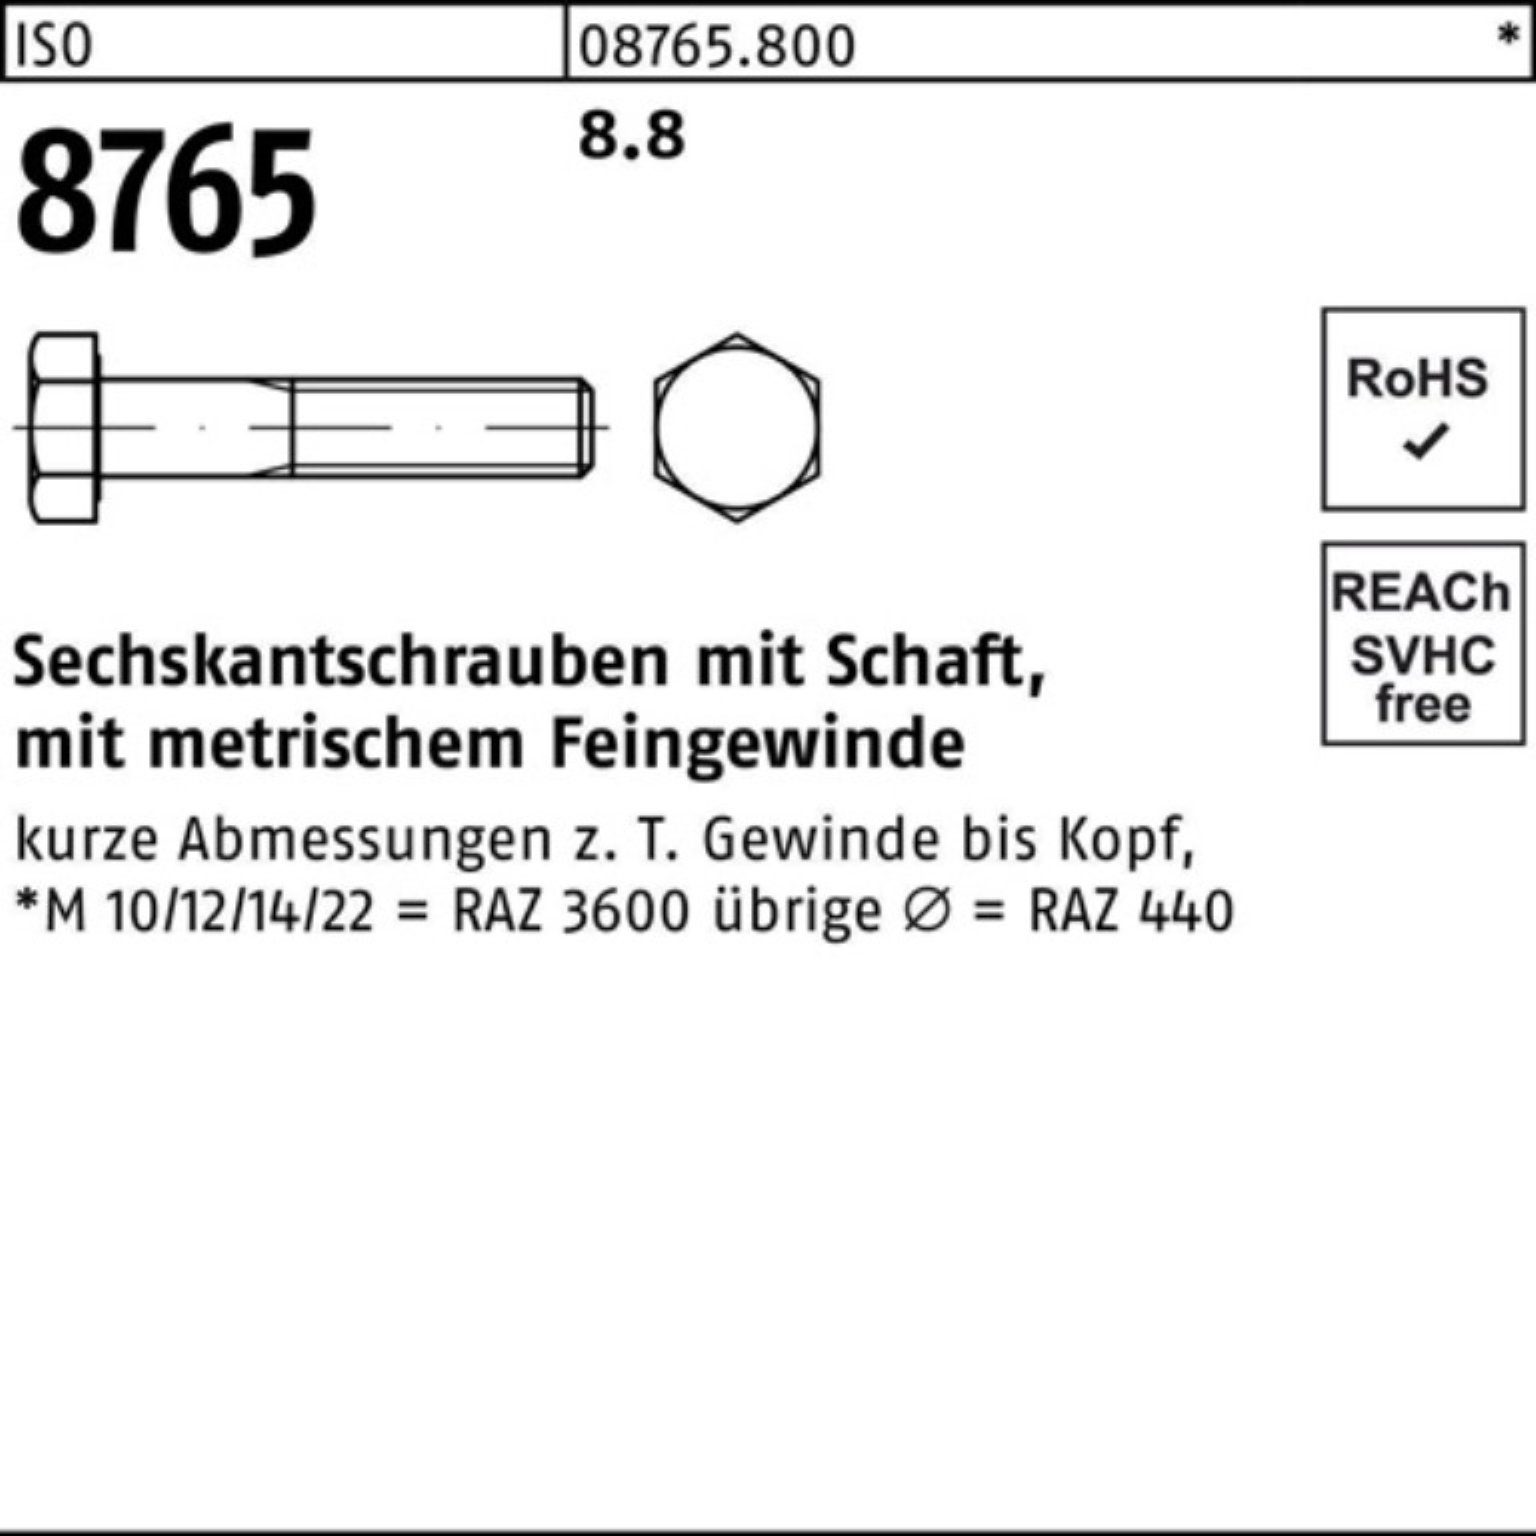 Schaft 100er Sechskantschraube M20x1,5x100 8765 Stück 8.8 Reyher Pack ISO 25 Sechskantschraube